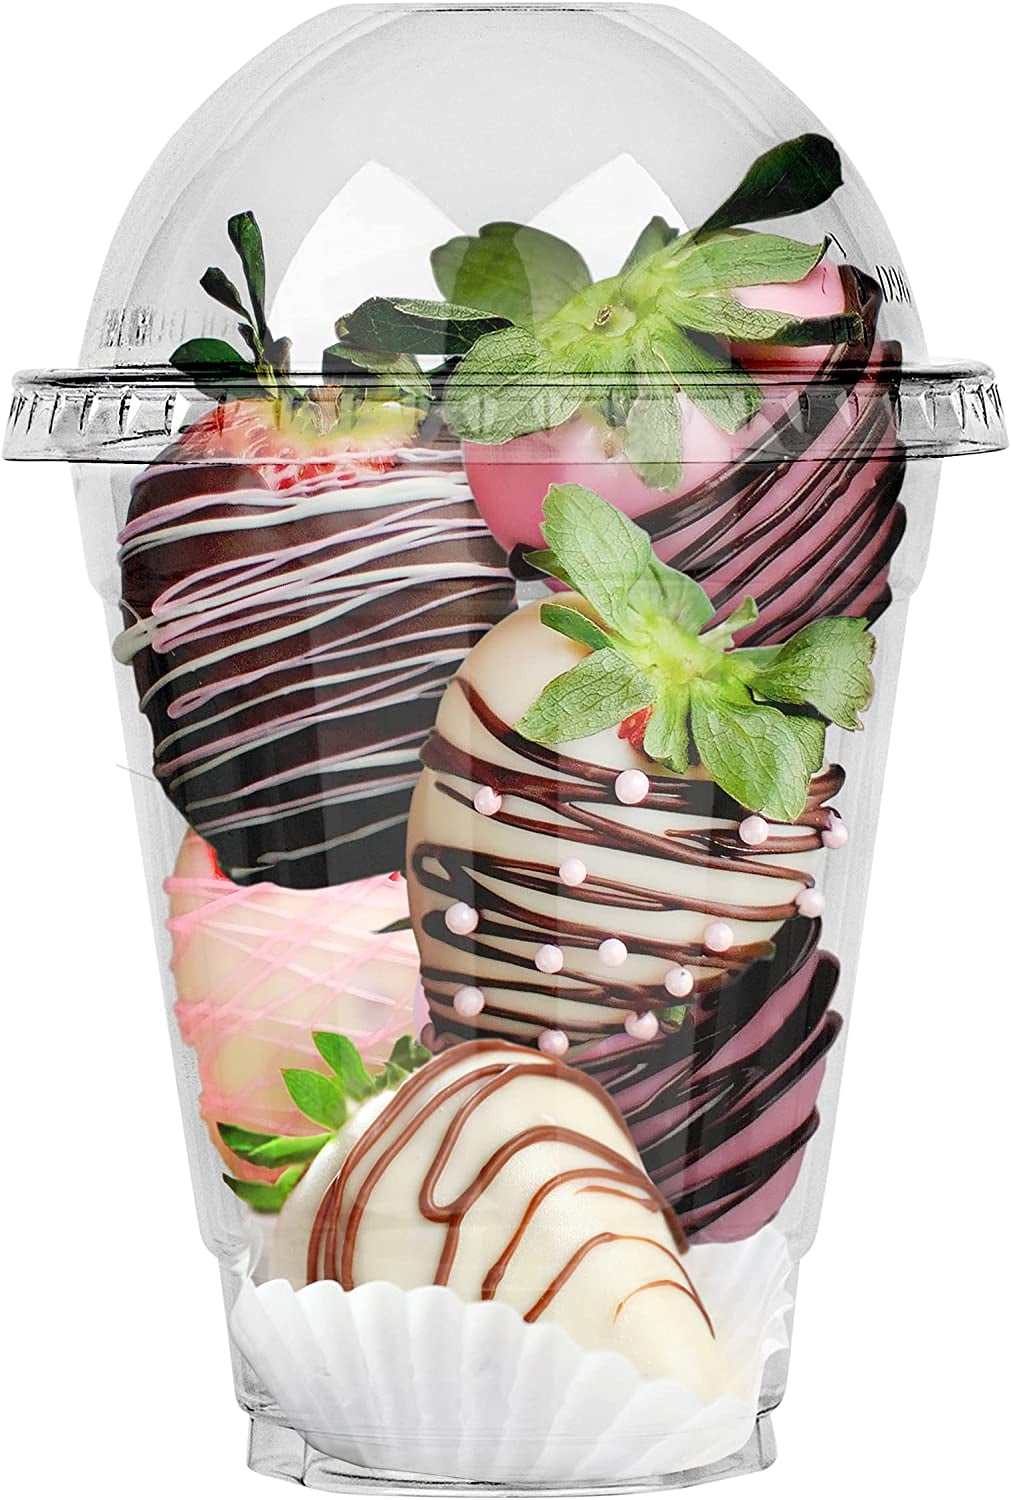 no hole Flat or no lids Slush Fruit Sweets Details about   9 oz Plastic Dessert Cups Dome 